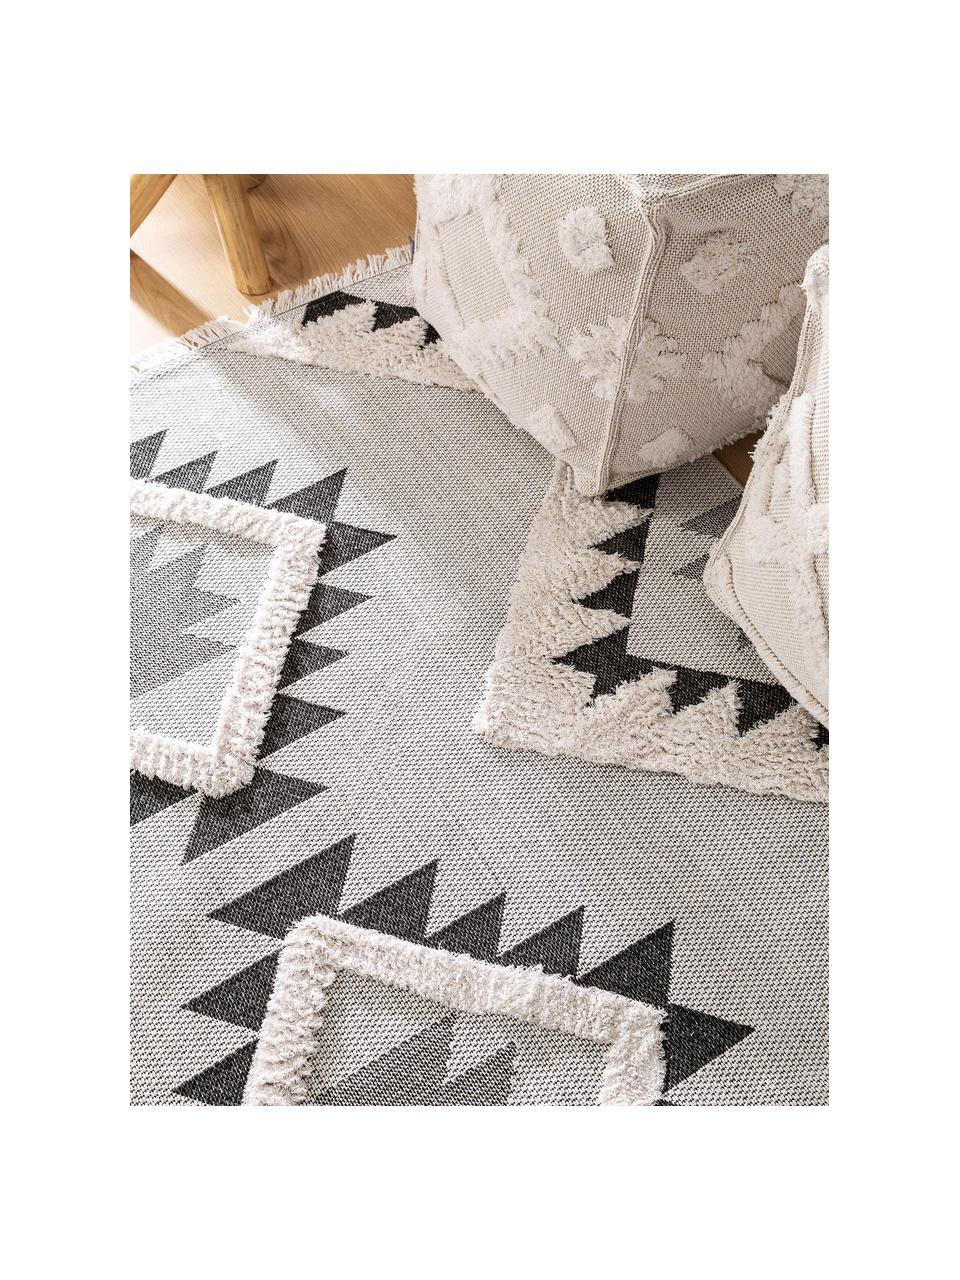 Tappeto in cotone lavato con frange Oslo Aztec, 100% cotone, Bianco crema, tonalità grigie, Larg. 150 x Lung. 230 cm